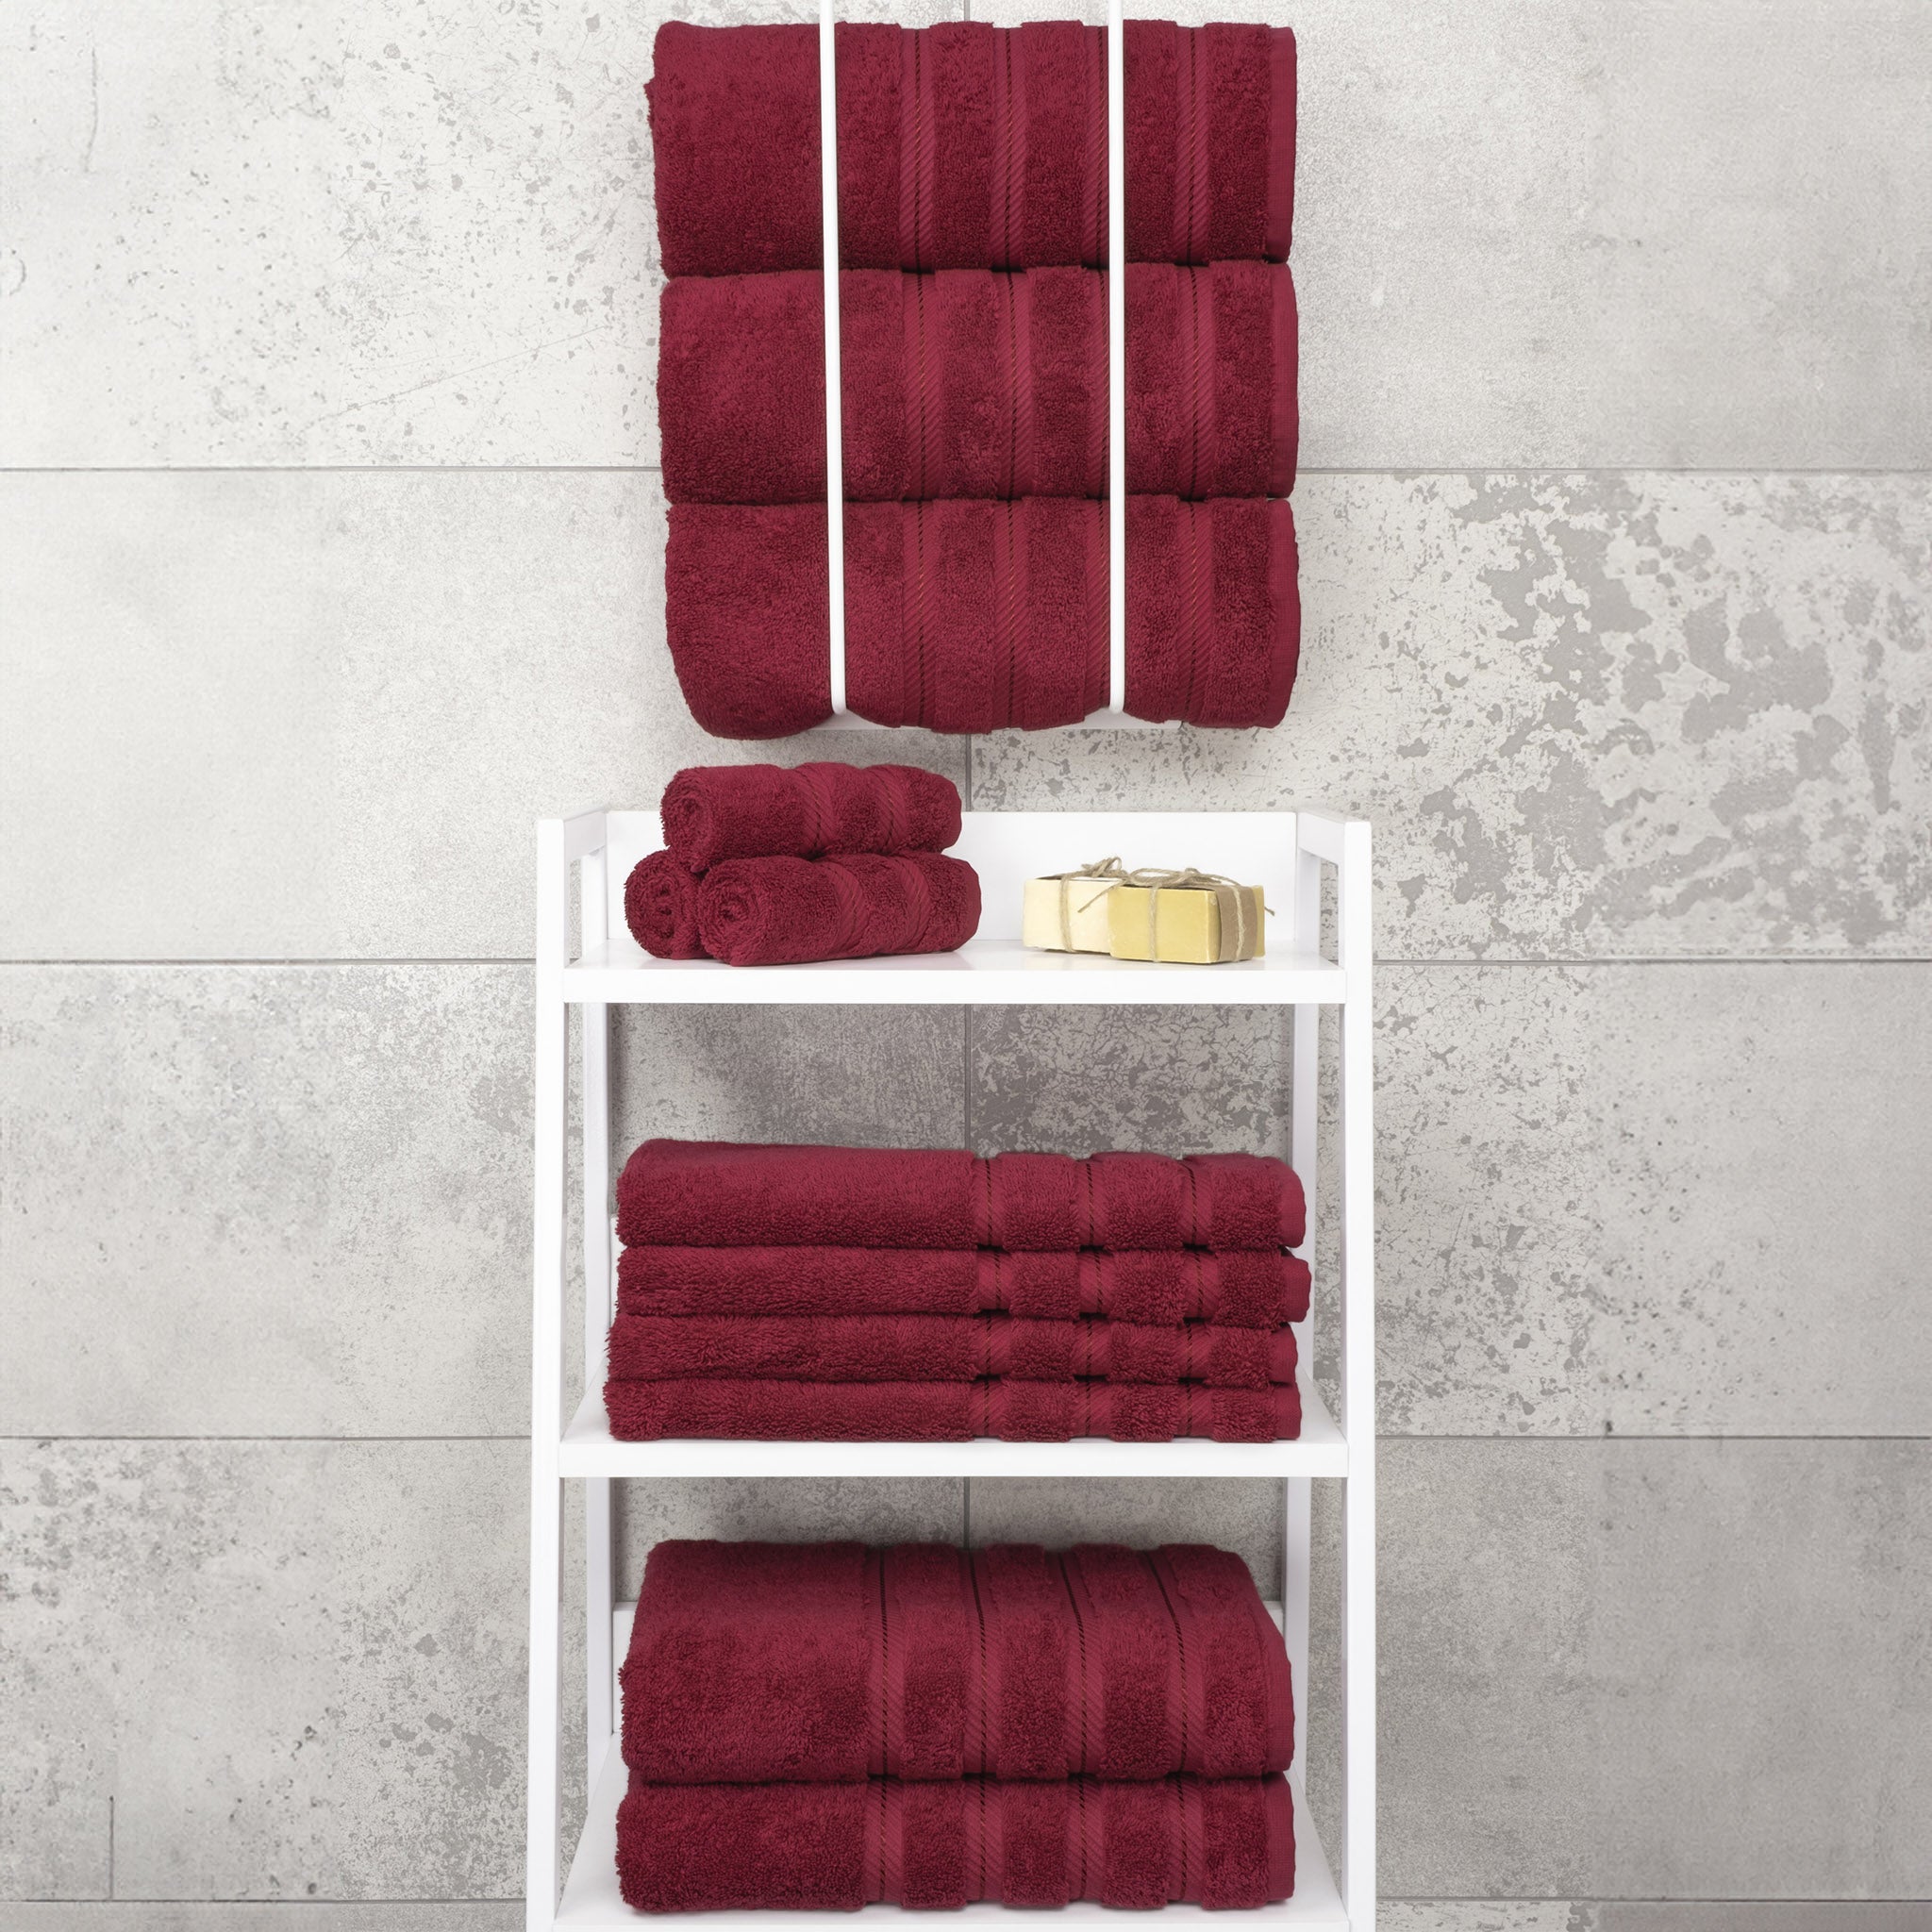 American Soft Linen 100% Turkish Cotton 4 Pack Bath Towel Set Wholesale bordeaux-red-7